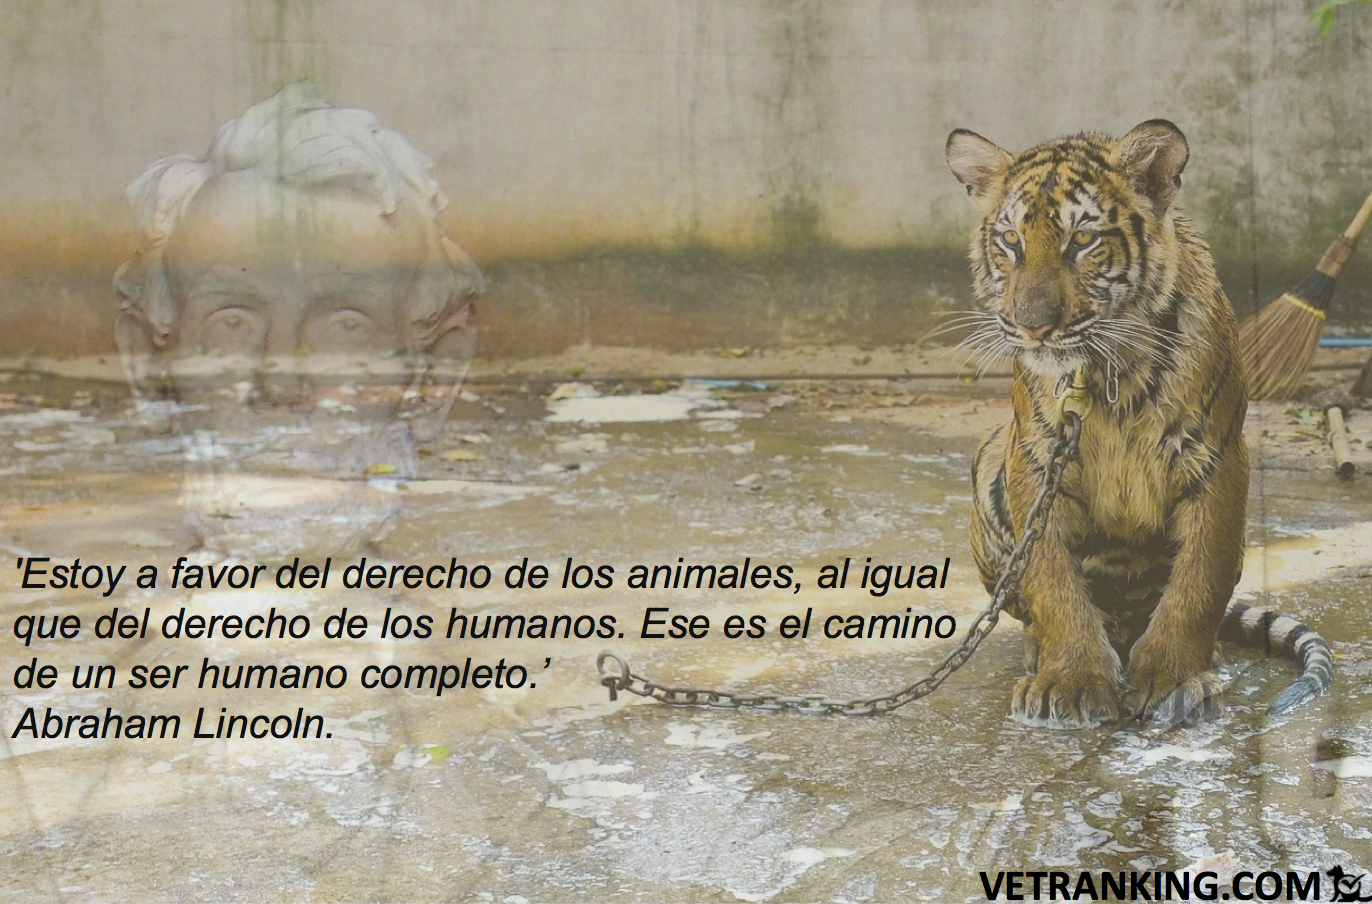 Estoy a favor del derecho de los animales, al igual que del derecho de los  humanos. Ese es el camino de un ser humano completo' (Abraham Lincoln). -  VETranking